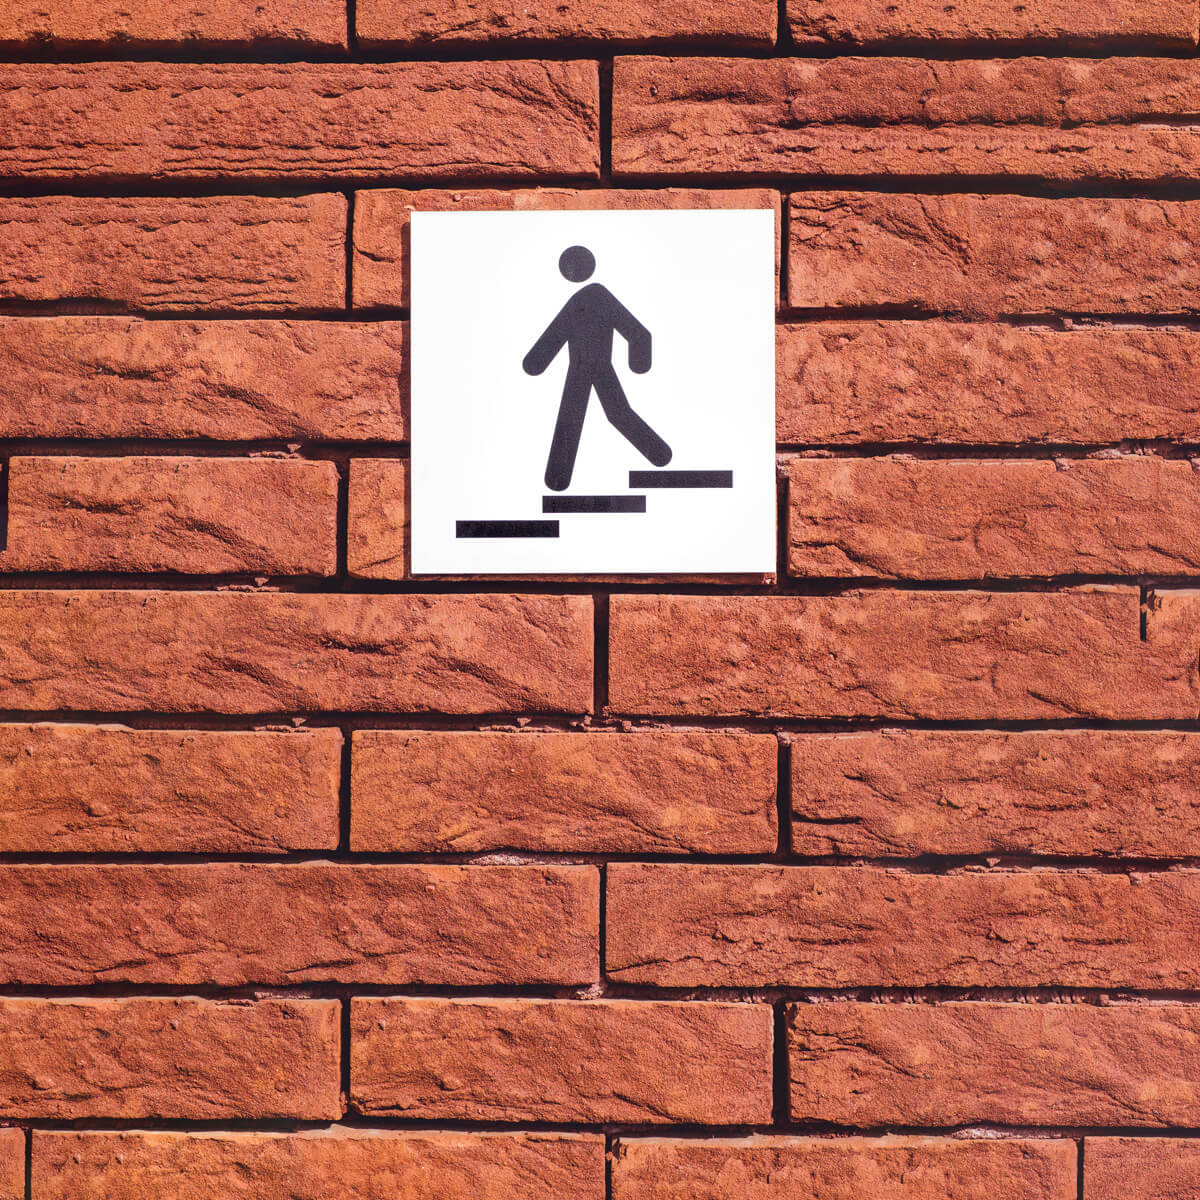 Imagen del exterior de una oficina con una placa de acero inoxidable rotulada con el pictograma de un monigote bajando las escaleras.